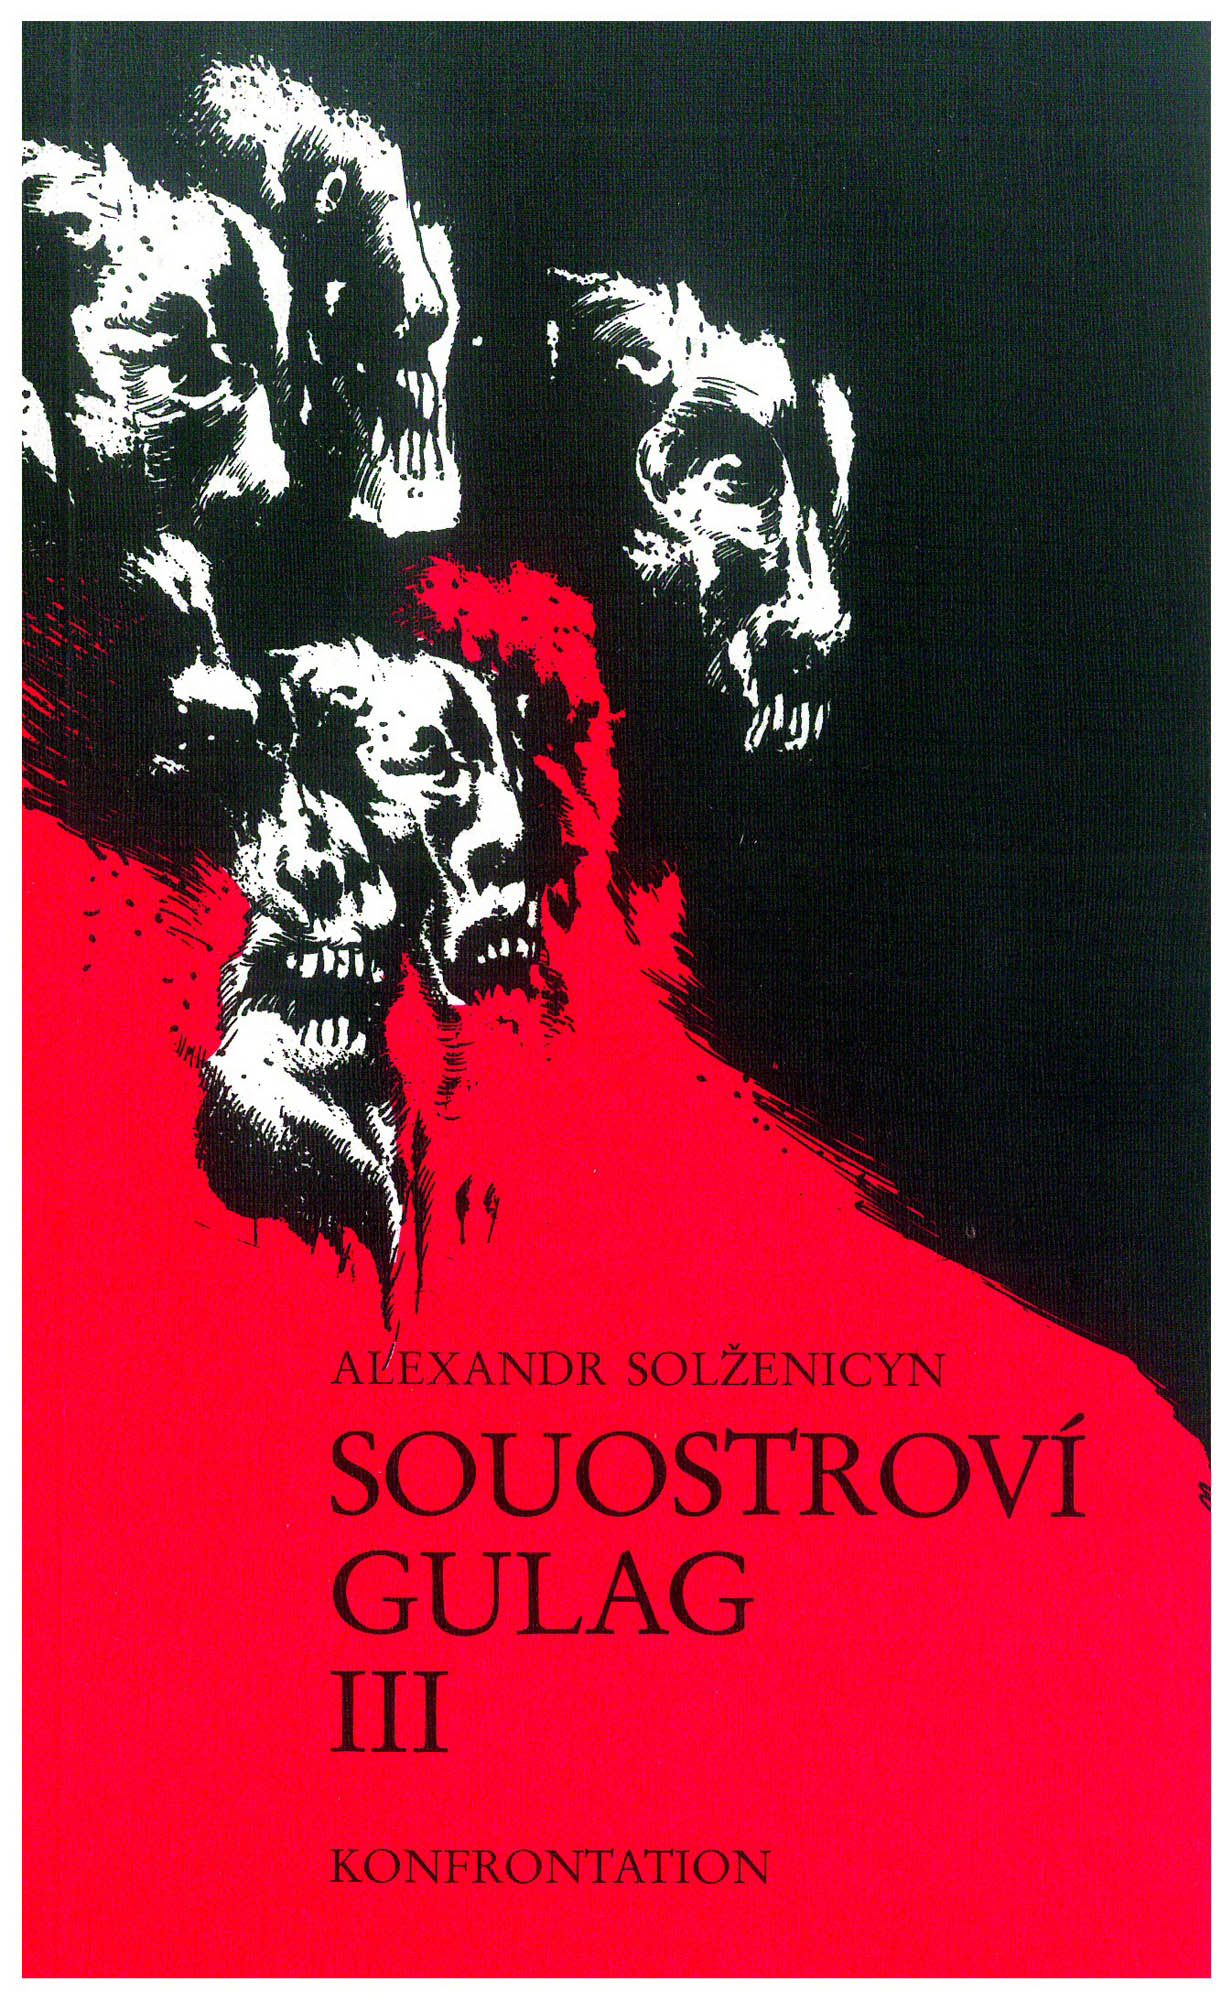 Obálka třetího dílu českého vydání Souostroví Gulag z exilového nakladatelství Konfrontace. Repro: Libri prohibiti